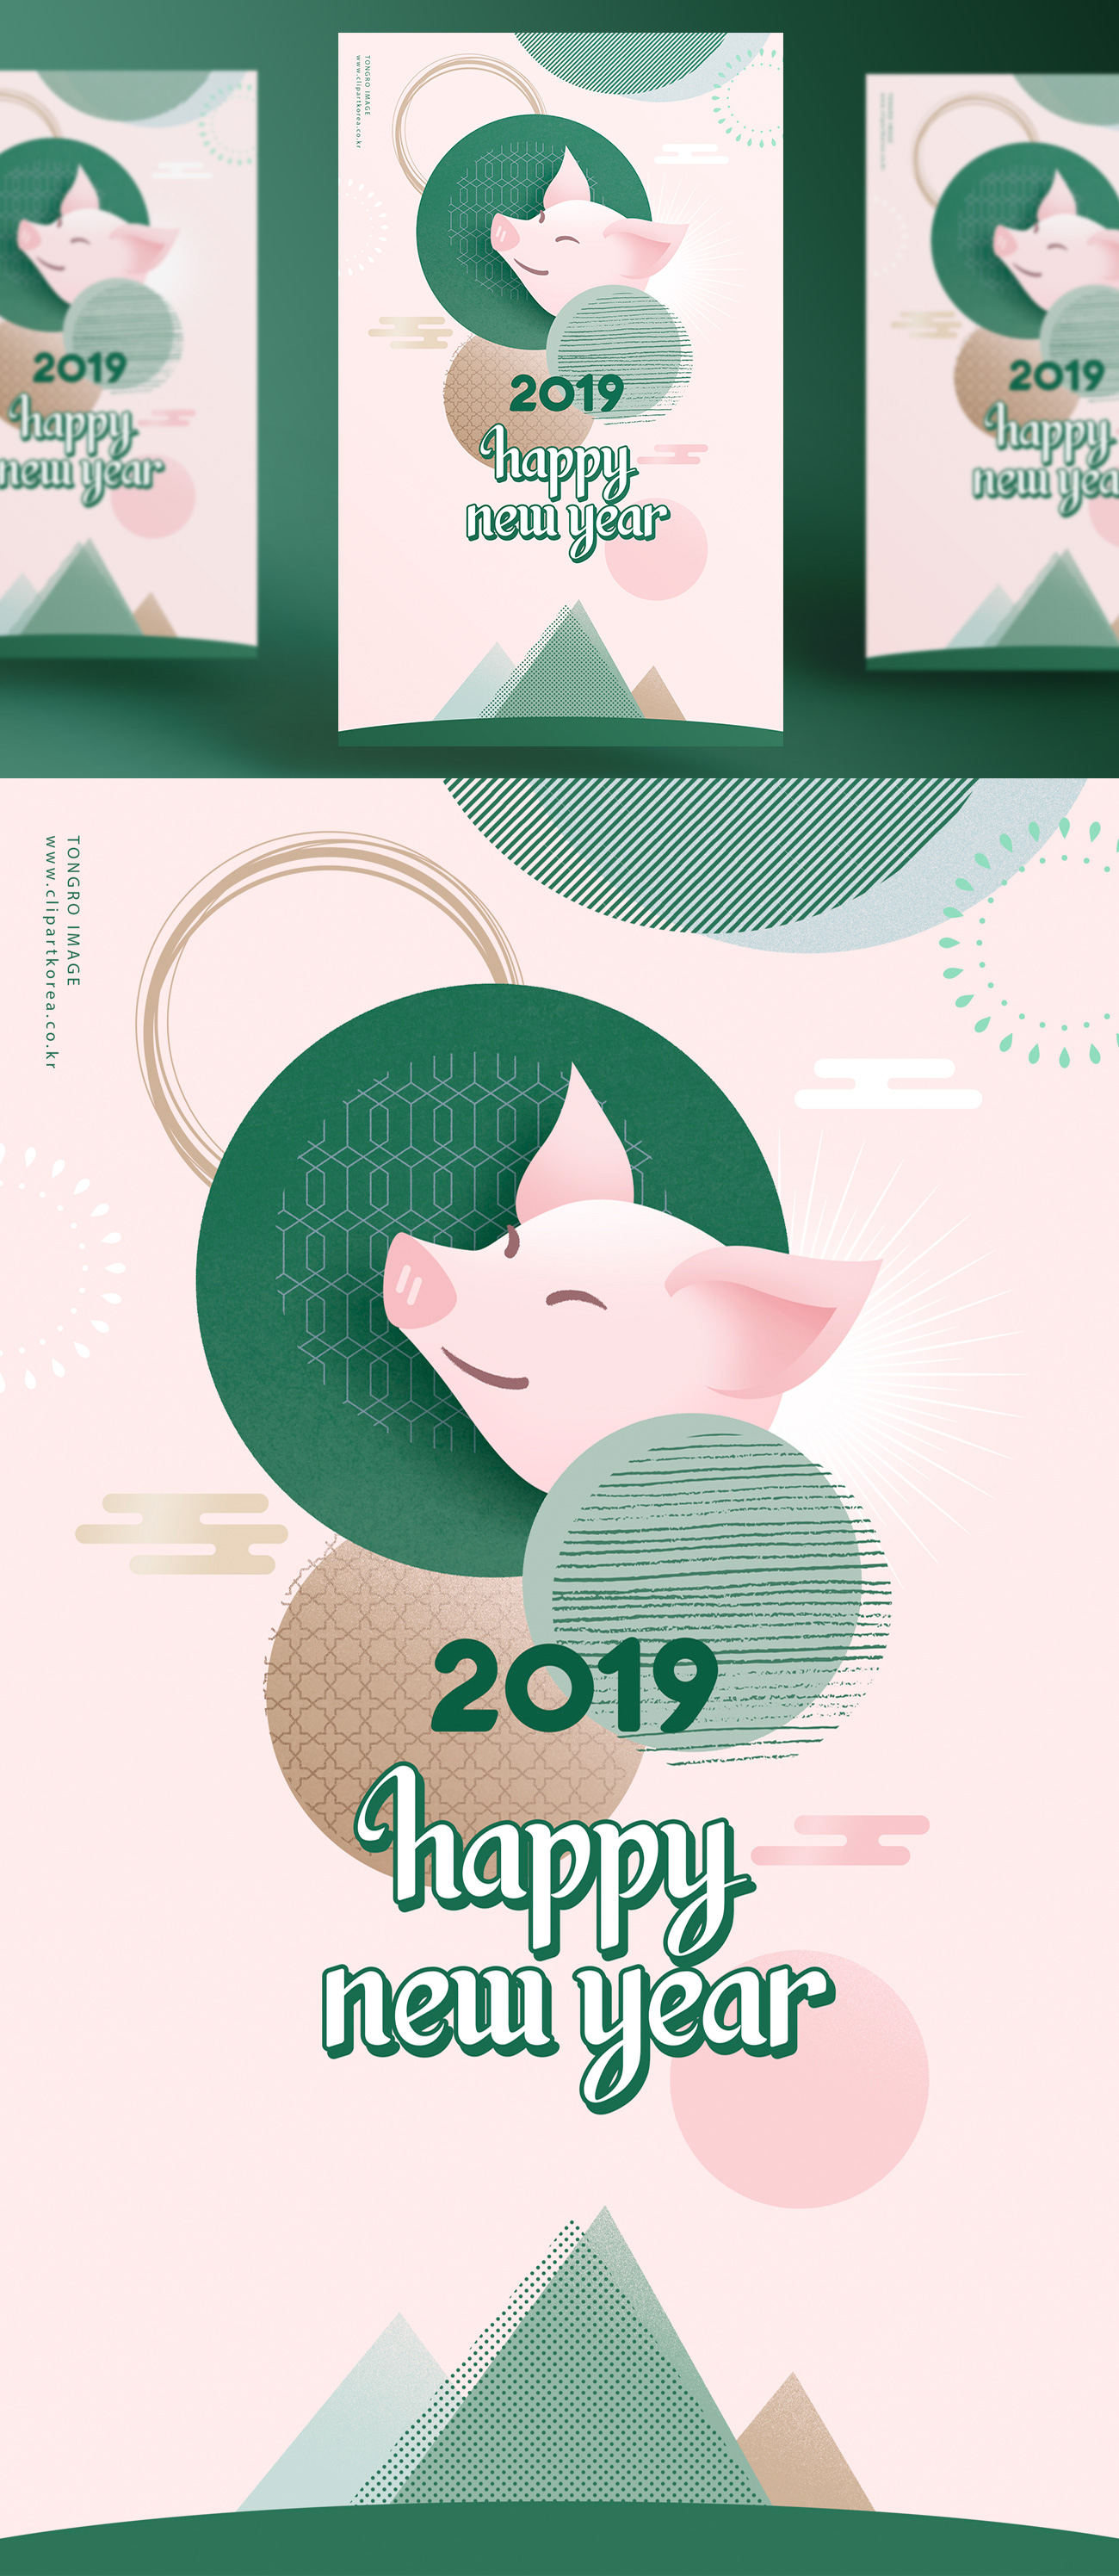 2019年另类传统清新贺卡新年快乐海报模版素材 Happy